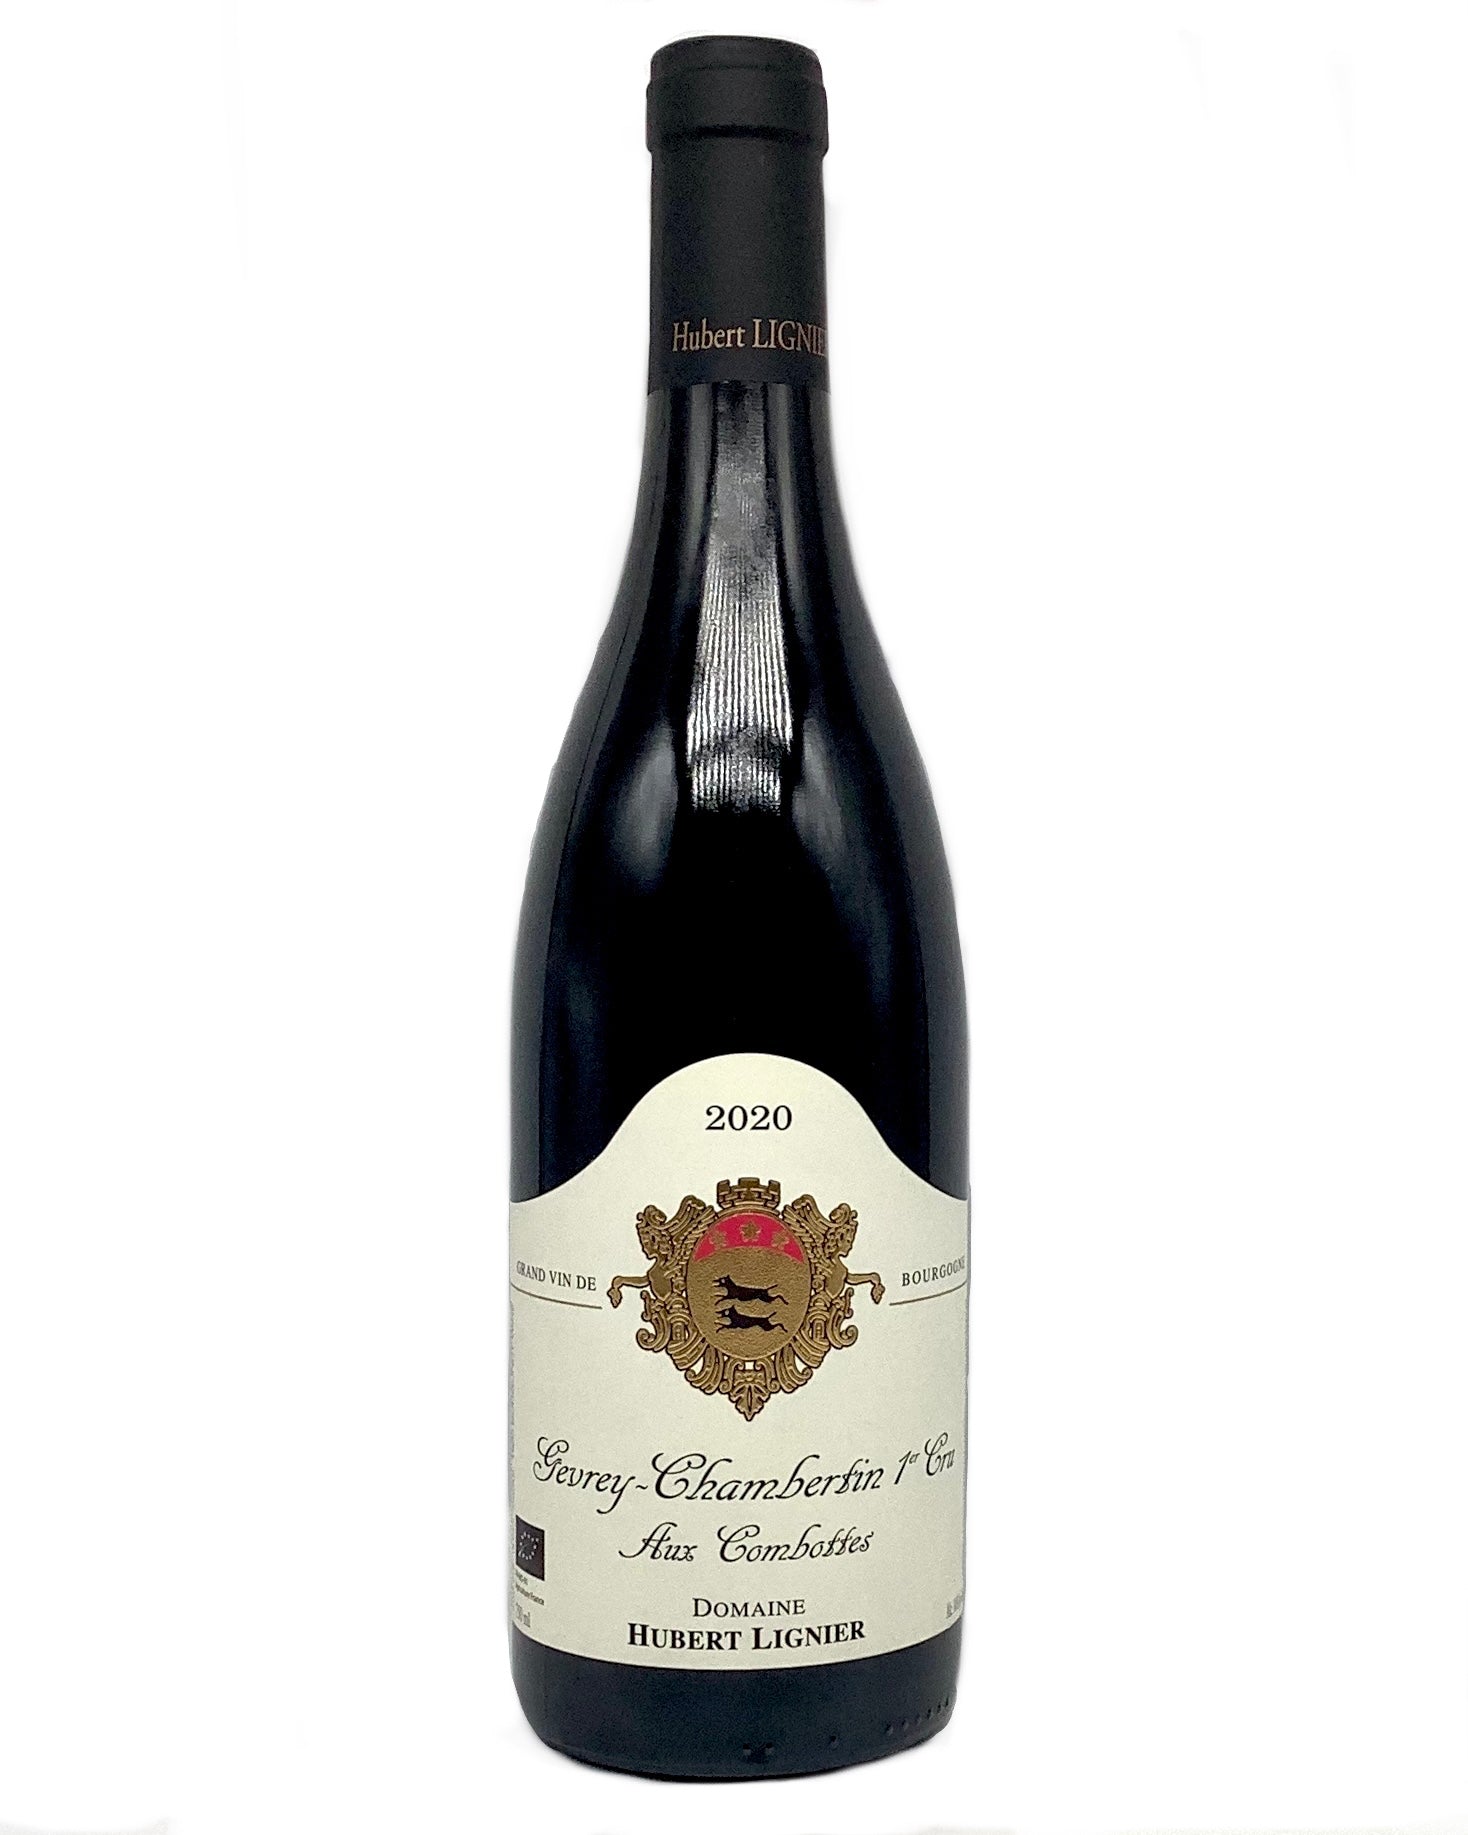 Domaine Hubert Lignier, Pinot Noir, Gevrey-Chambertin 1er Cru Aux Combottes, Côte de Nuits, Burgundy, France 2020